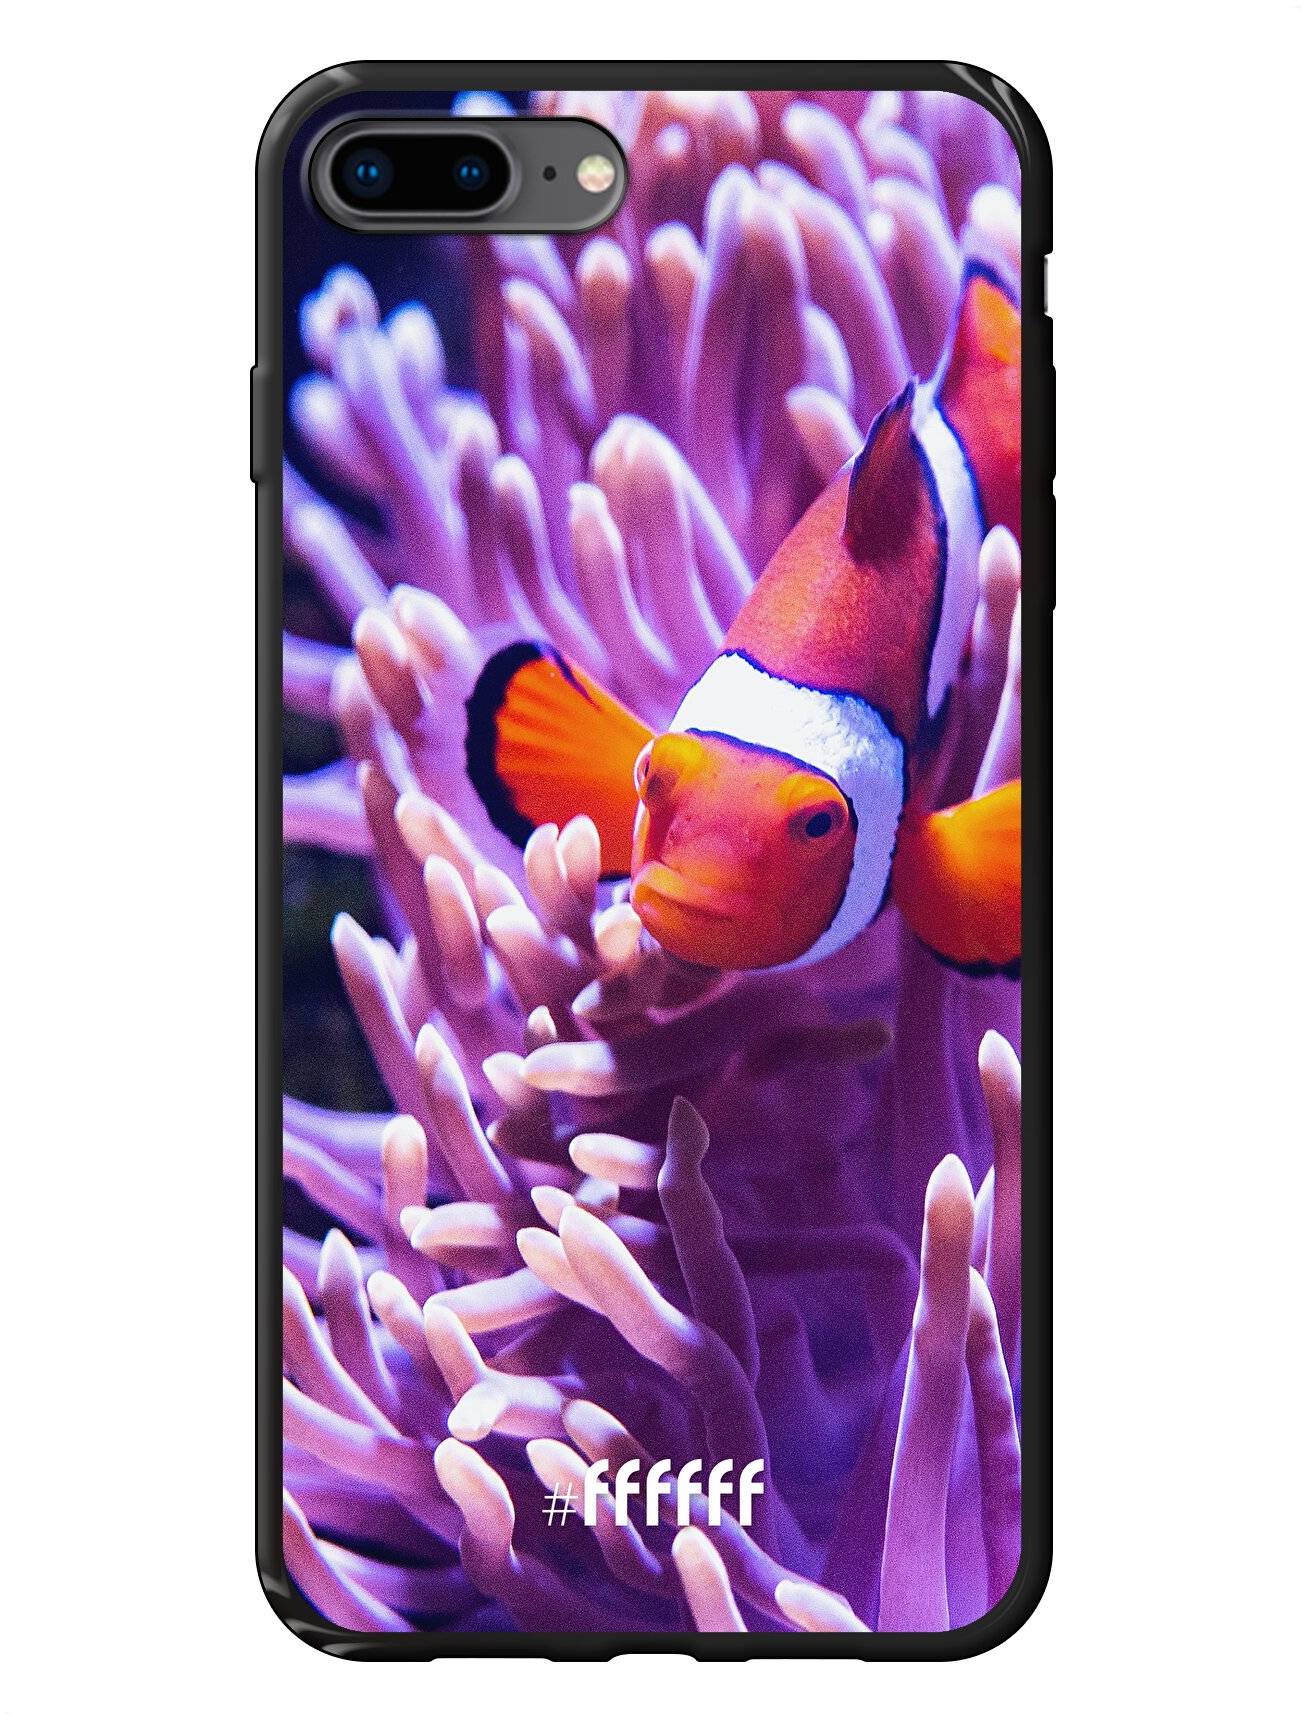 Nemo iPhone 8 Plus